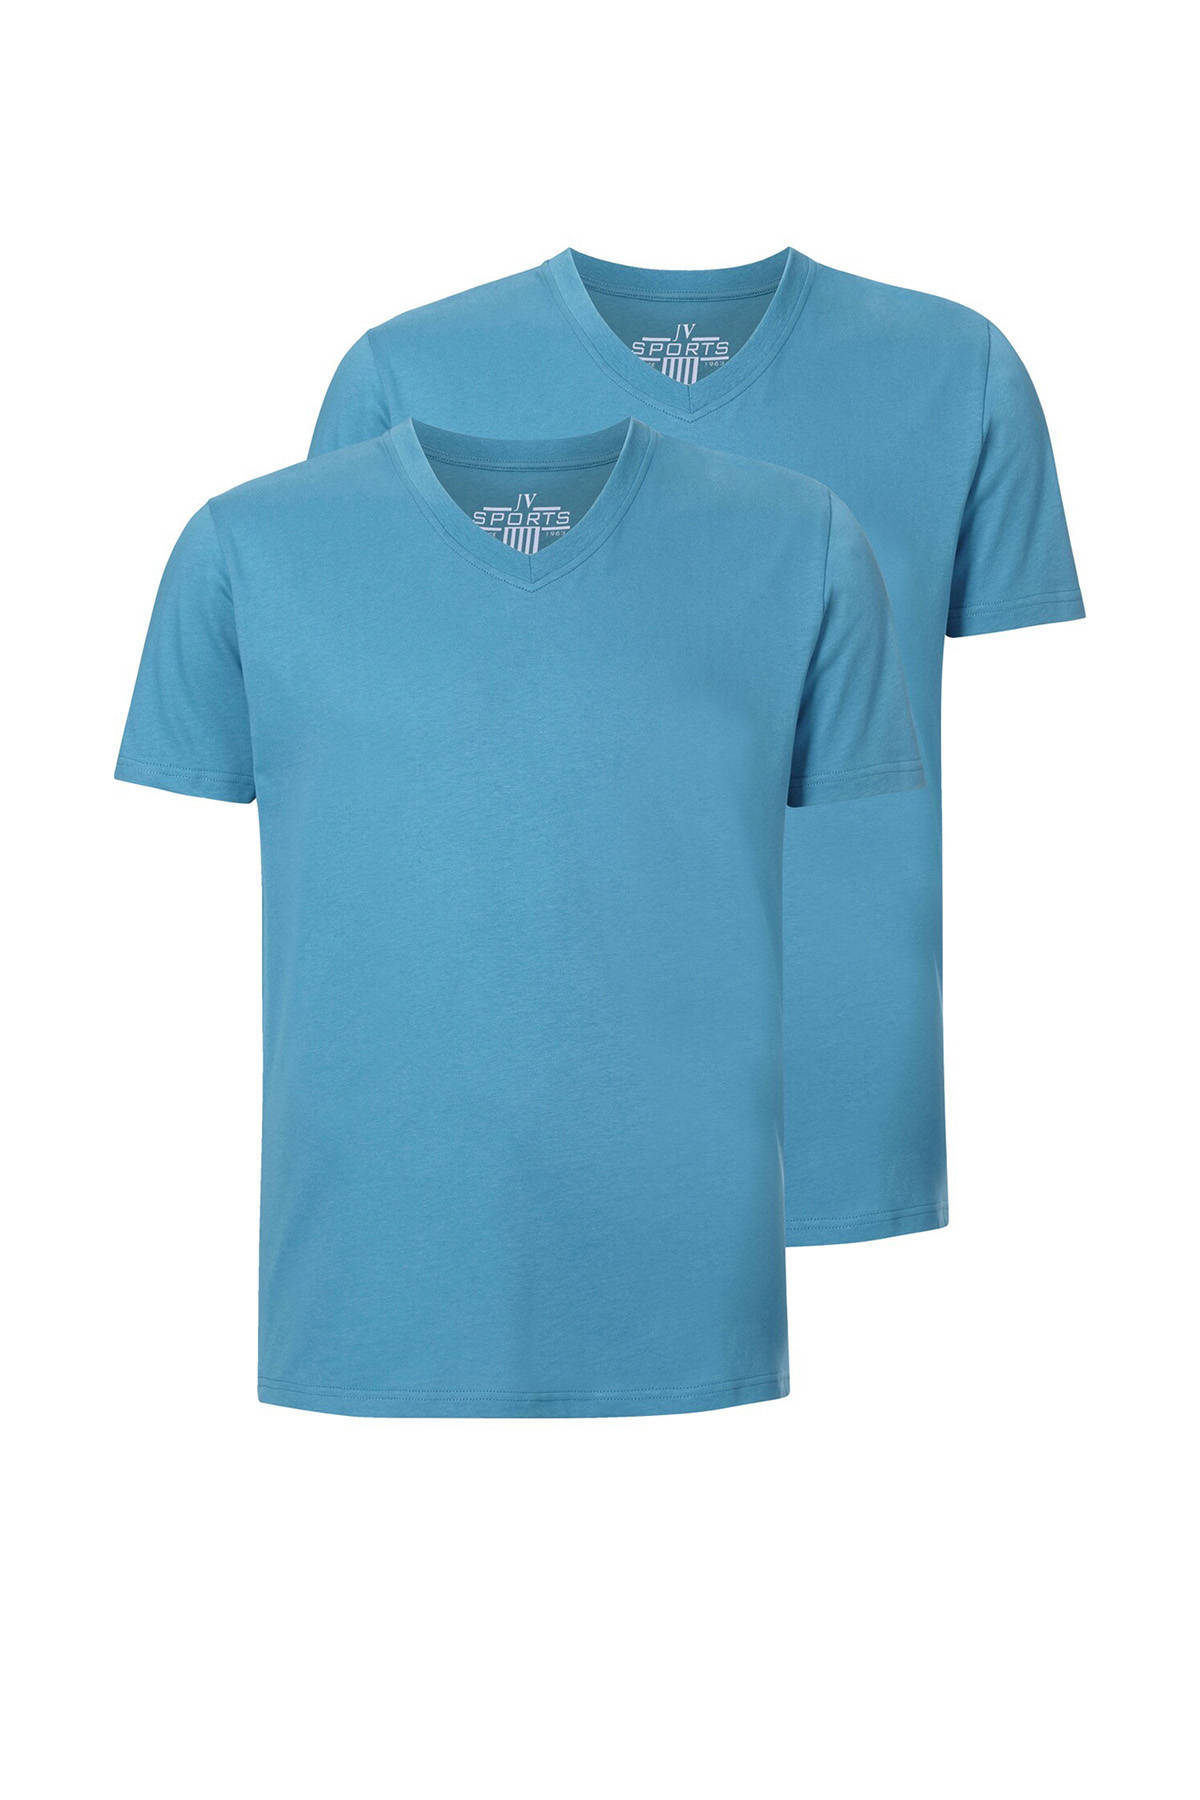 Jan Vanderstorm T shirt OSMO (set van 2 ) online kopen